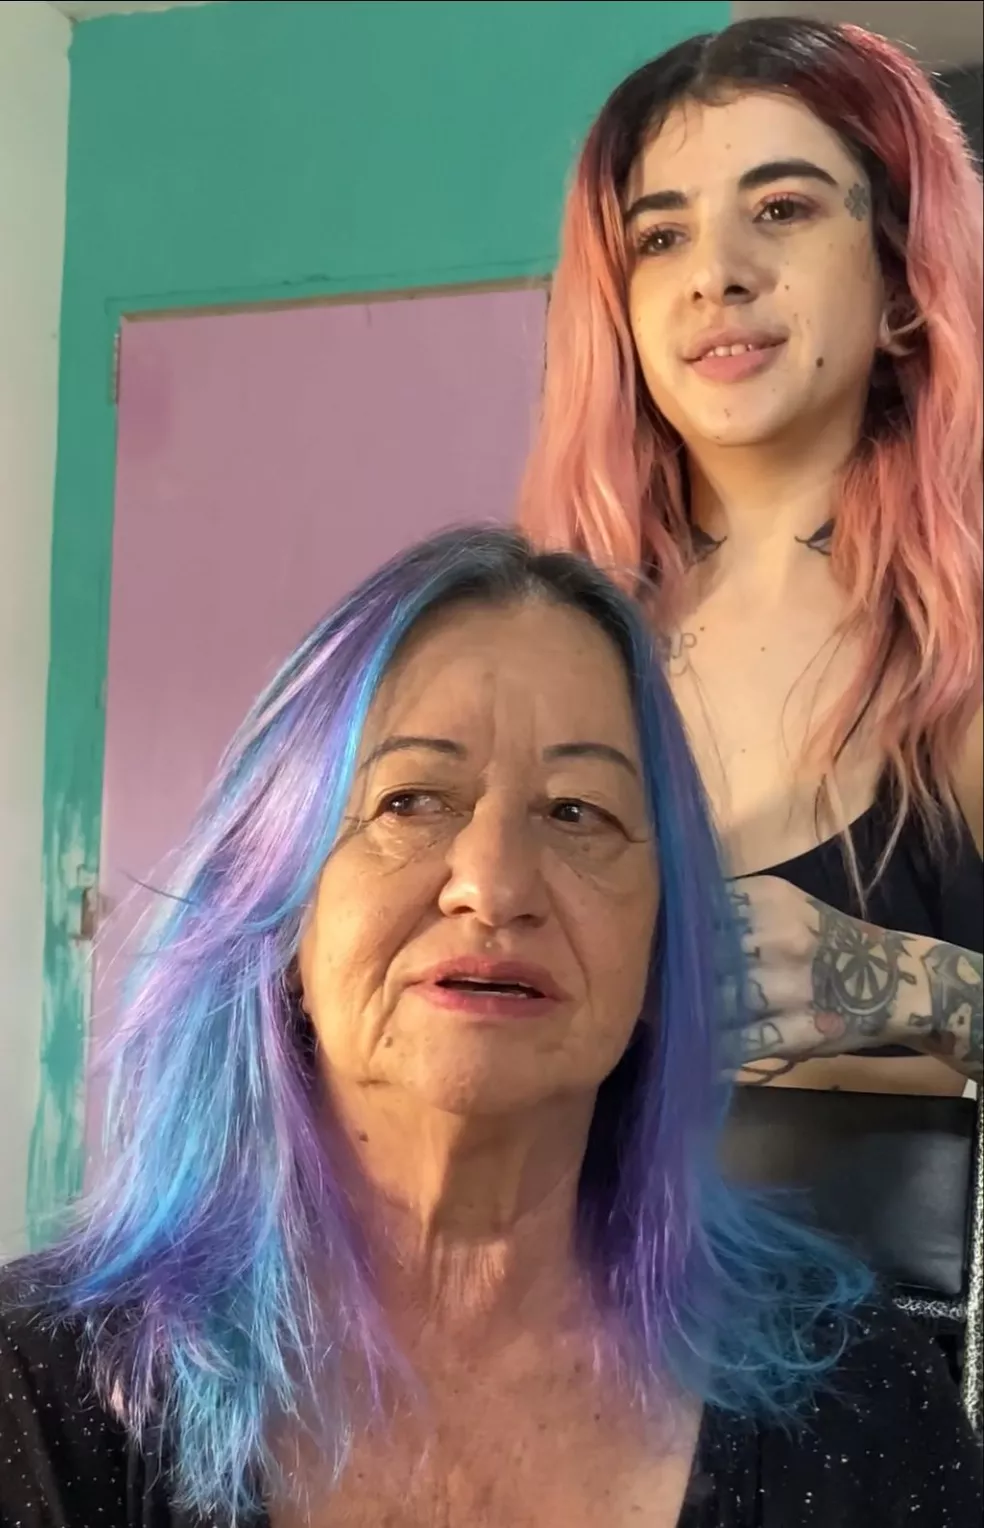 agrandeartedeserfeliz.com - Filha viraliza ao pintar cabelo da mãe com as cores roxo e azul: 'Ficou chique!' [VIDEO]